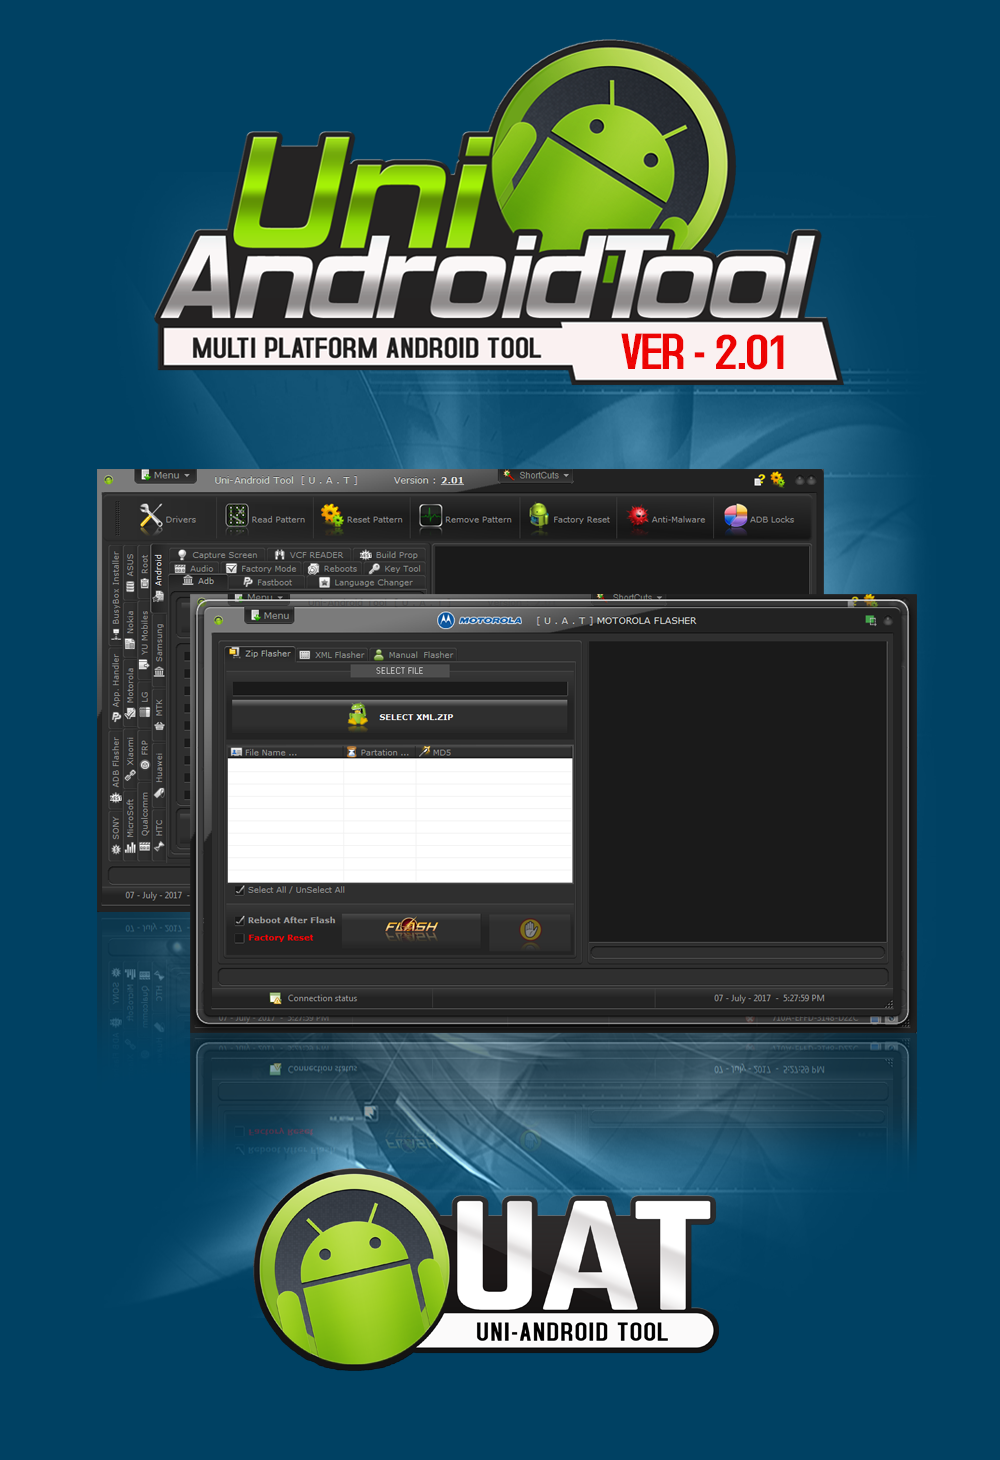 Uni tools. Uni-Android Tool - uat. Uni Android Tool пароль. Сетевые инструменты Android. Uni Android Tool пароль установка.